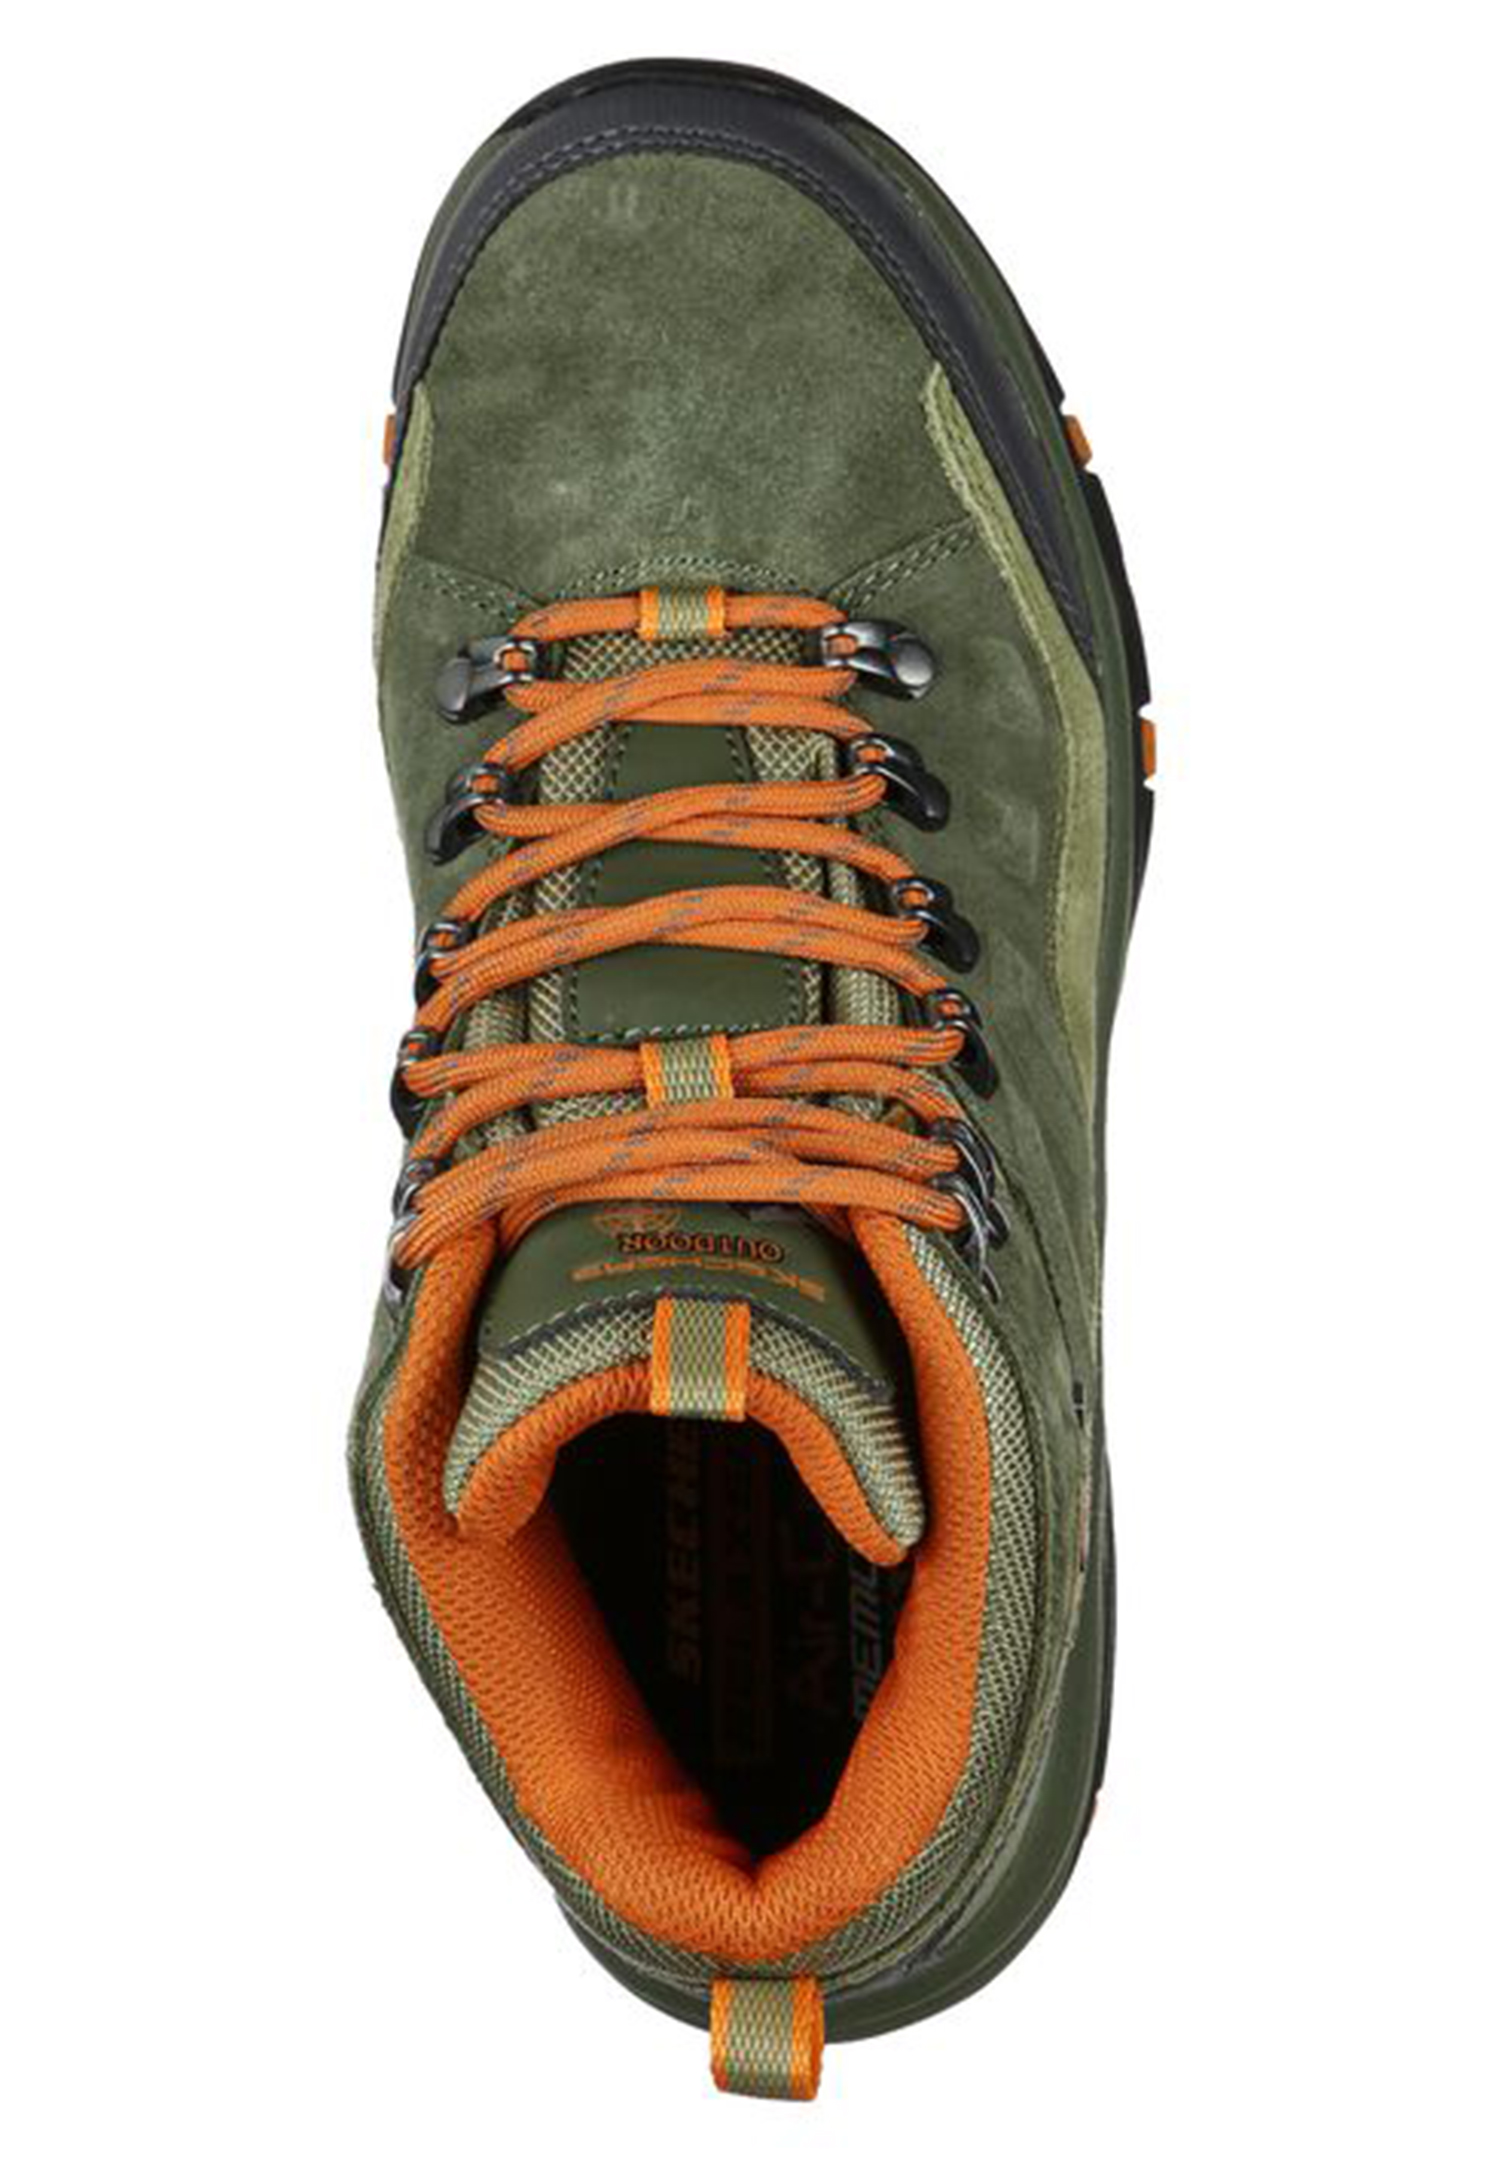 Skechers Damen Trego - ROCKY MOUNTAIN Wanderstiefel Boots 158258 Olive 